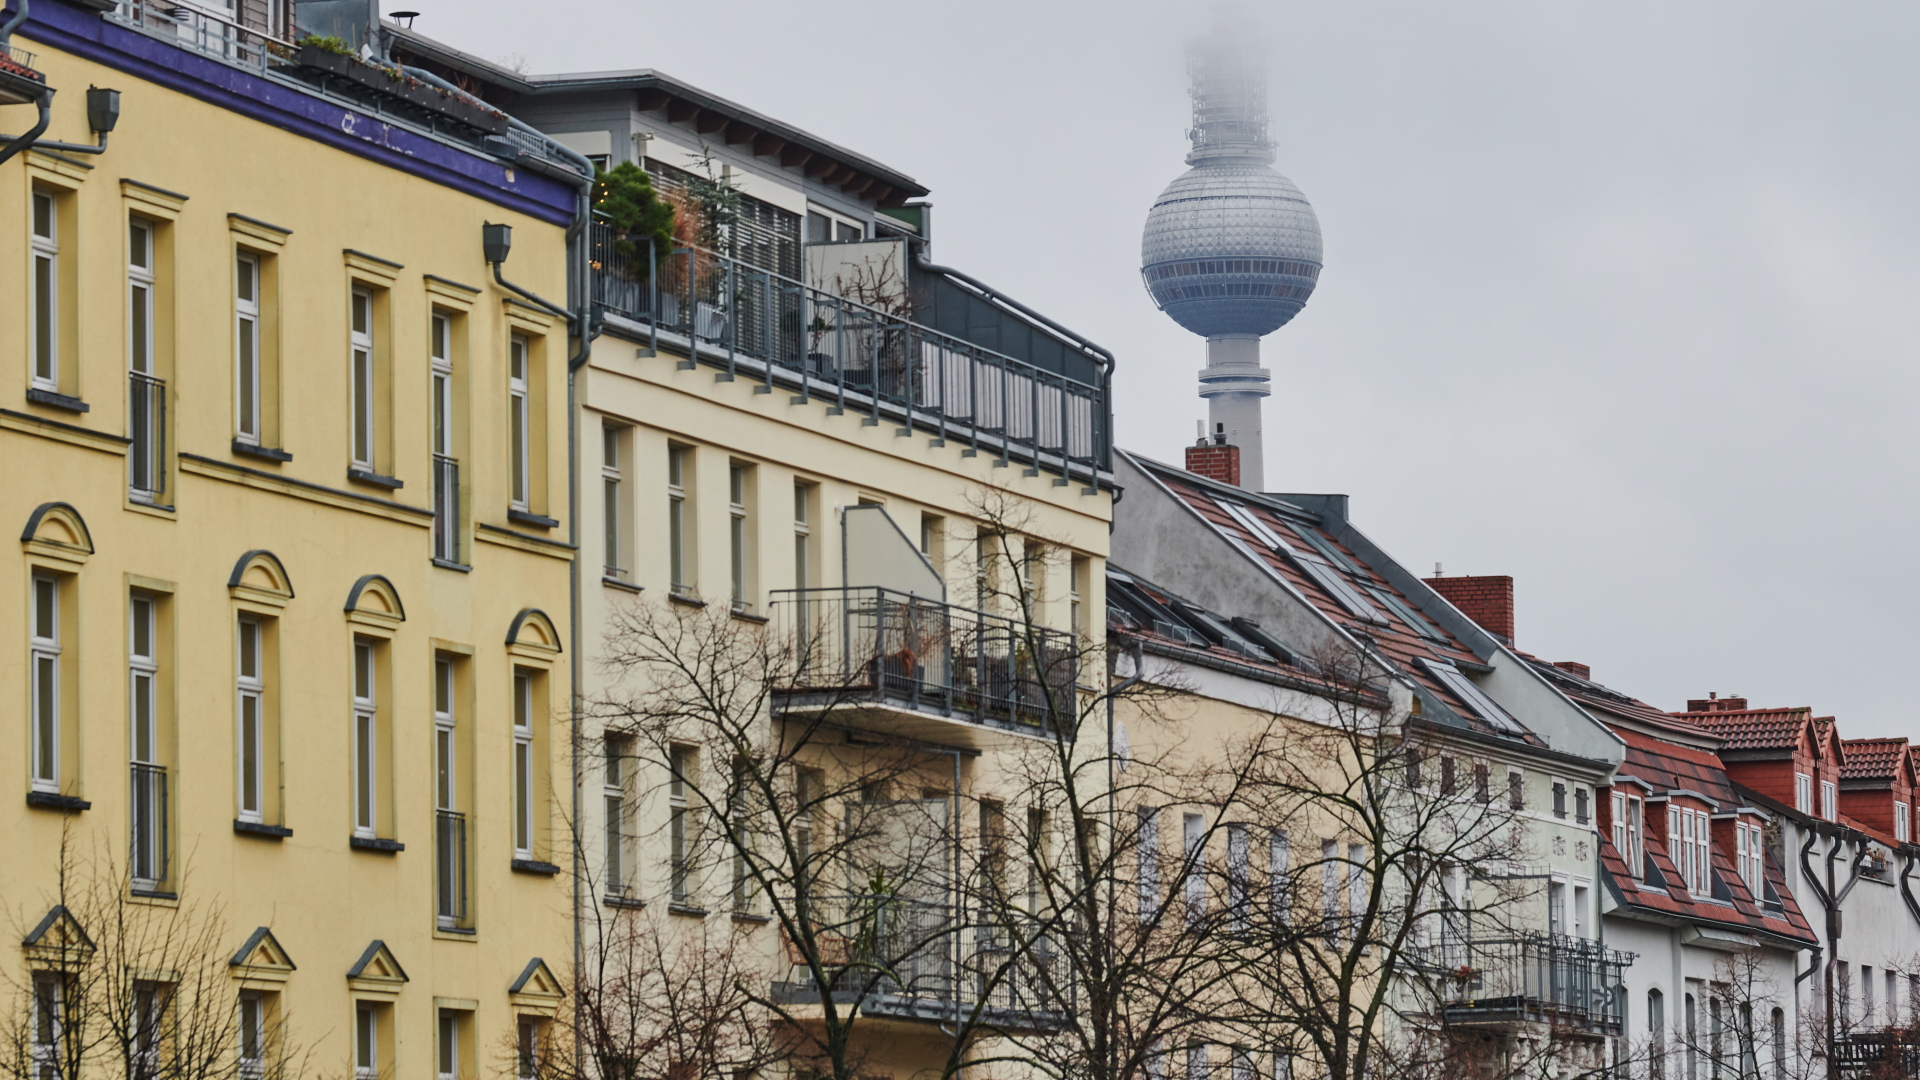 Wohnhäuser in Berlin mit dem Fernsehturm im Hintergrund | dpa